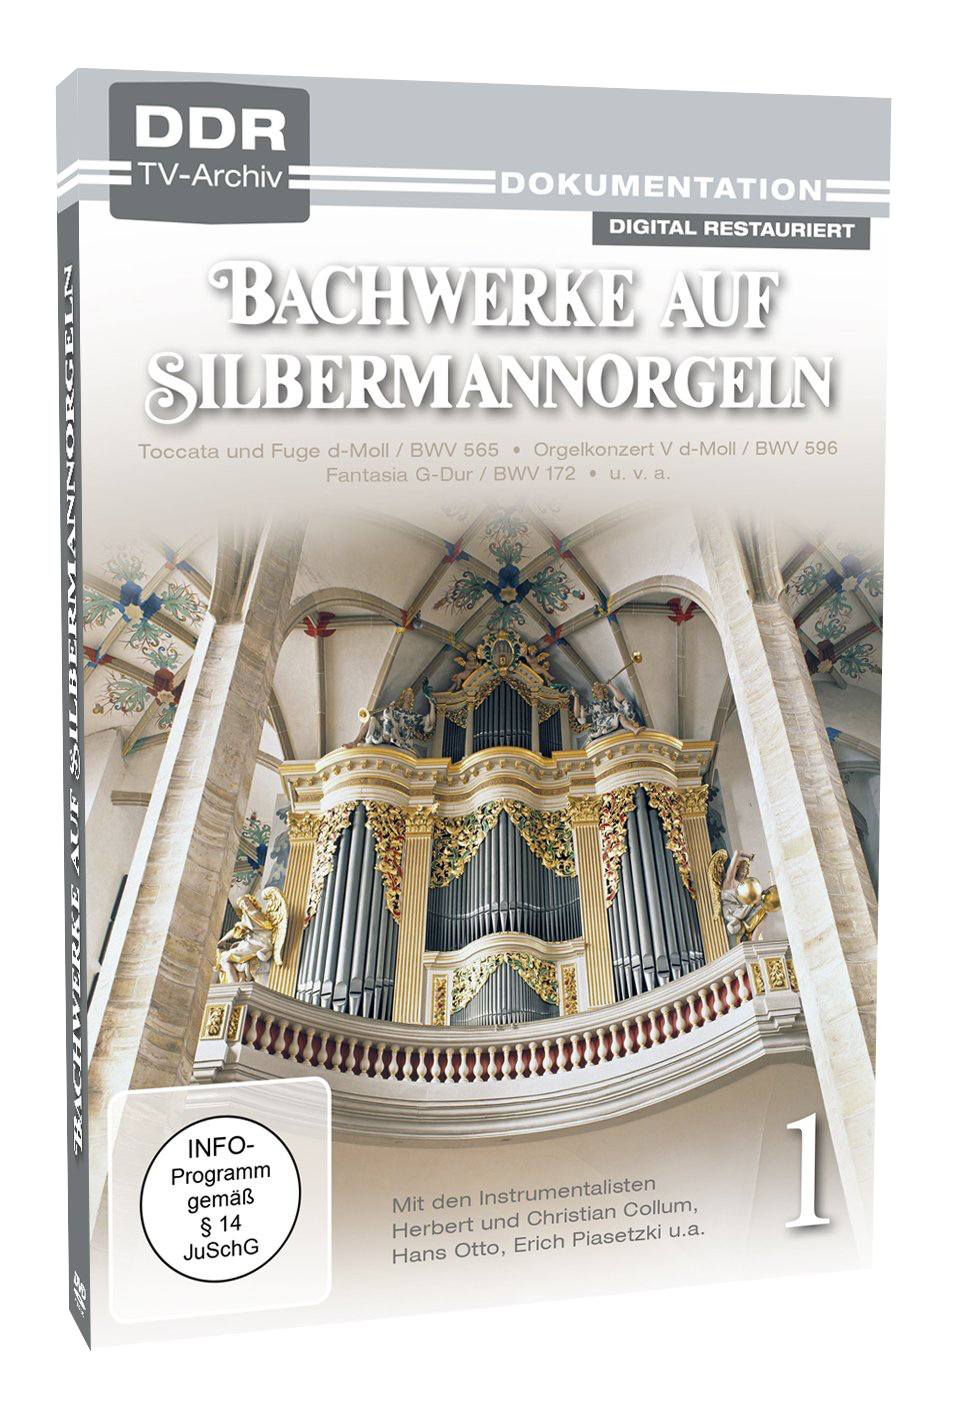 Bachwerke auf Silbermann-Orgeln, Vol. 1